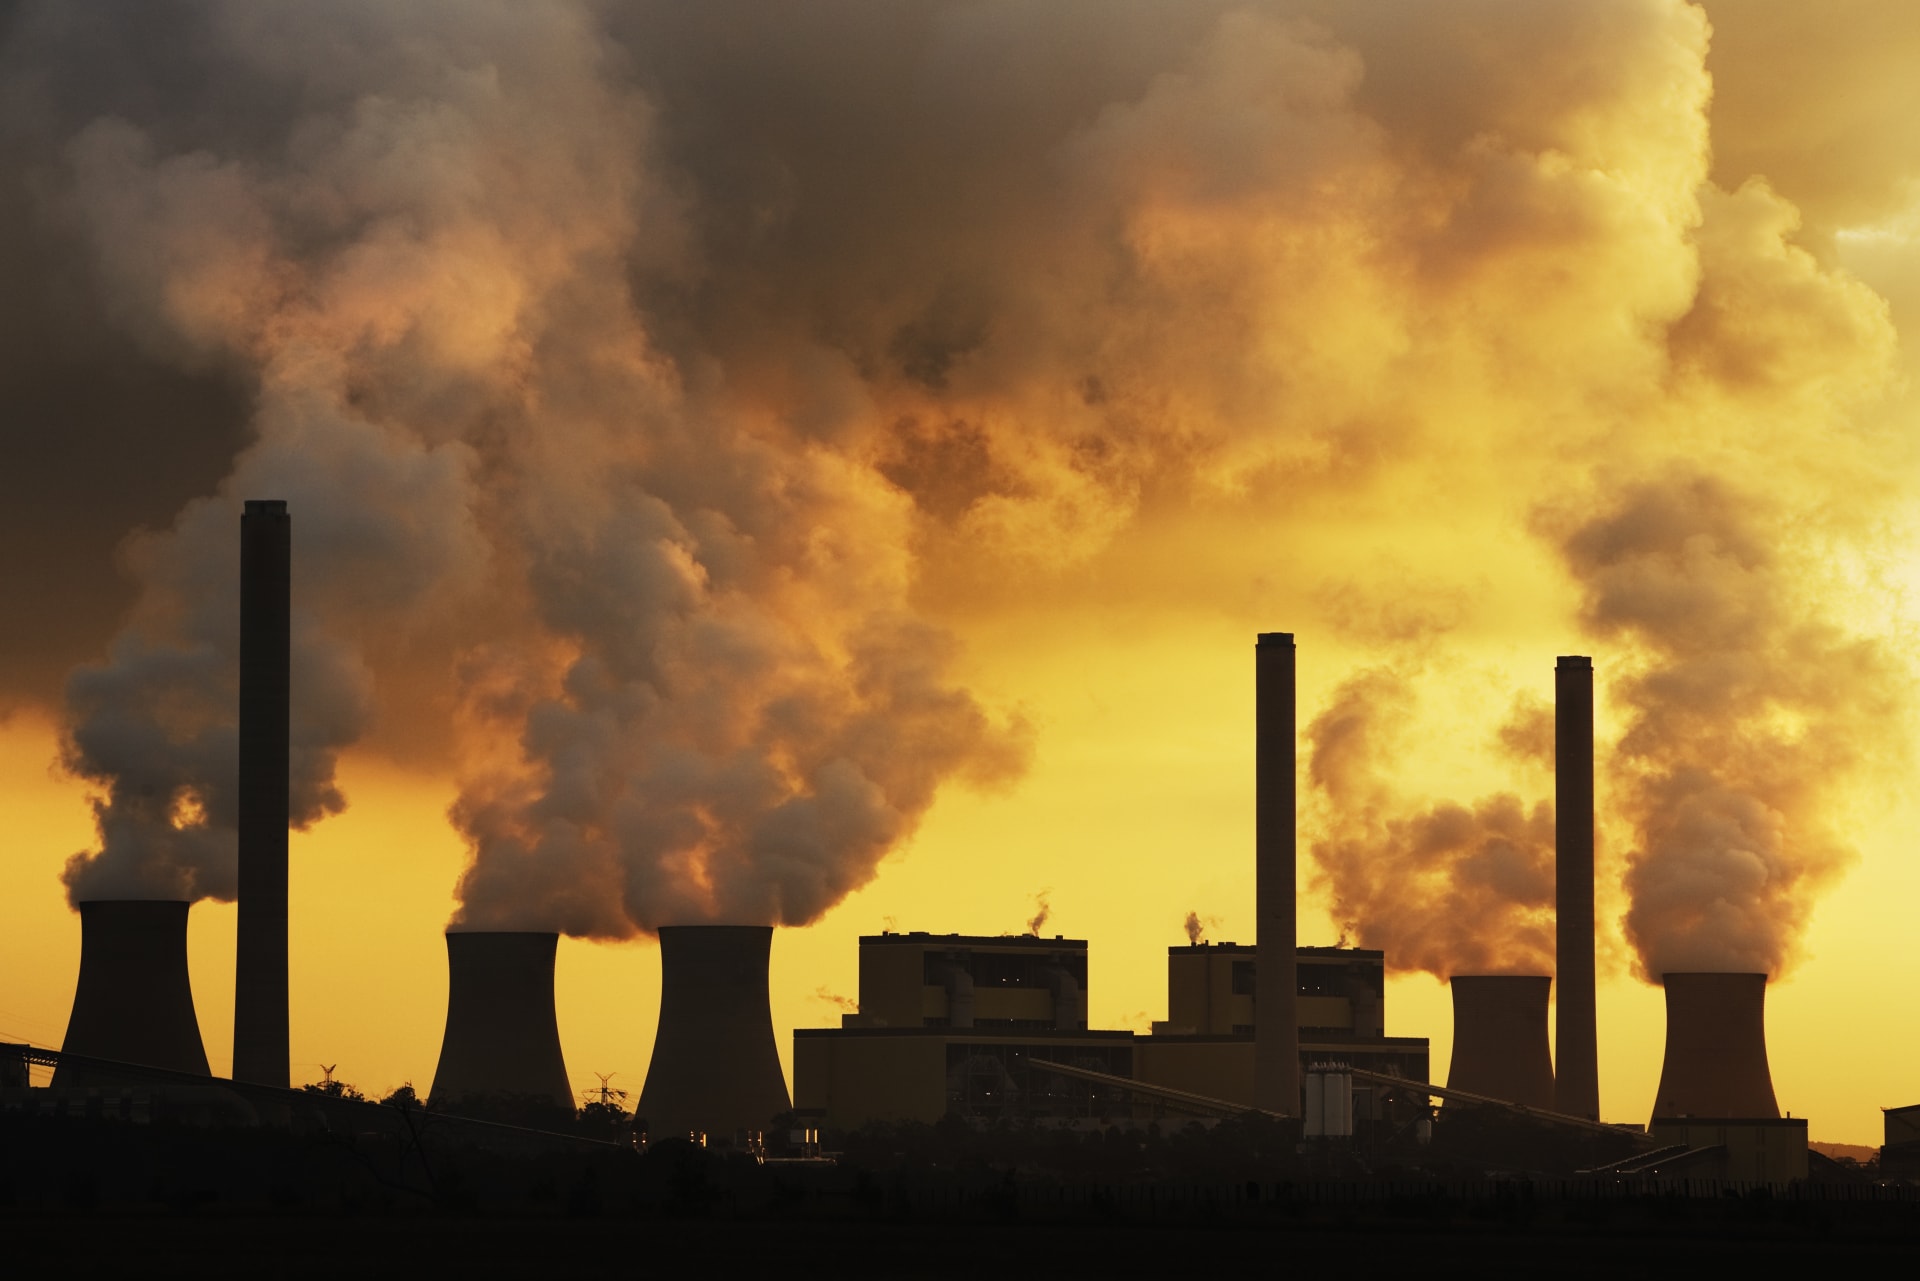 Největším zdrojem emisí oxidu uhličitého v EU je výroba elektřiny a tepla, následuje zpracovatelský průmysl.